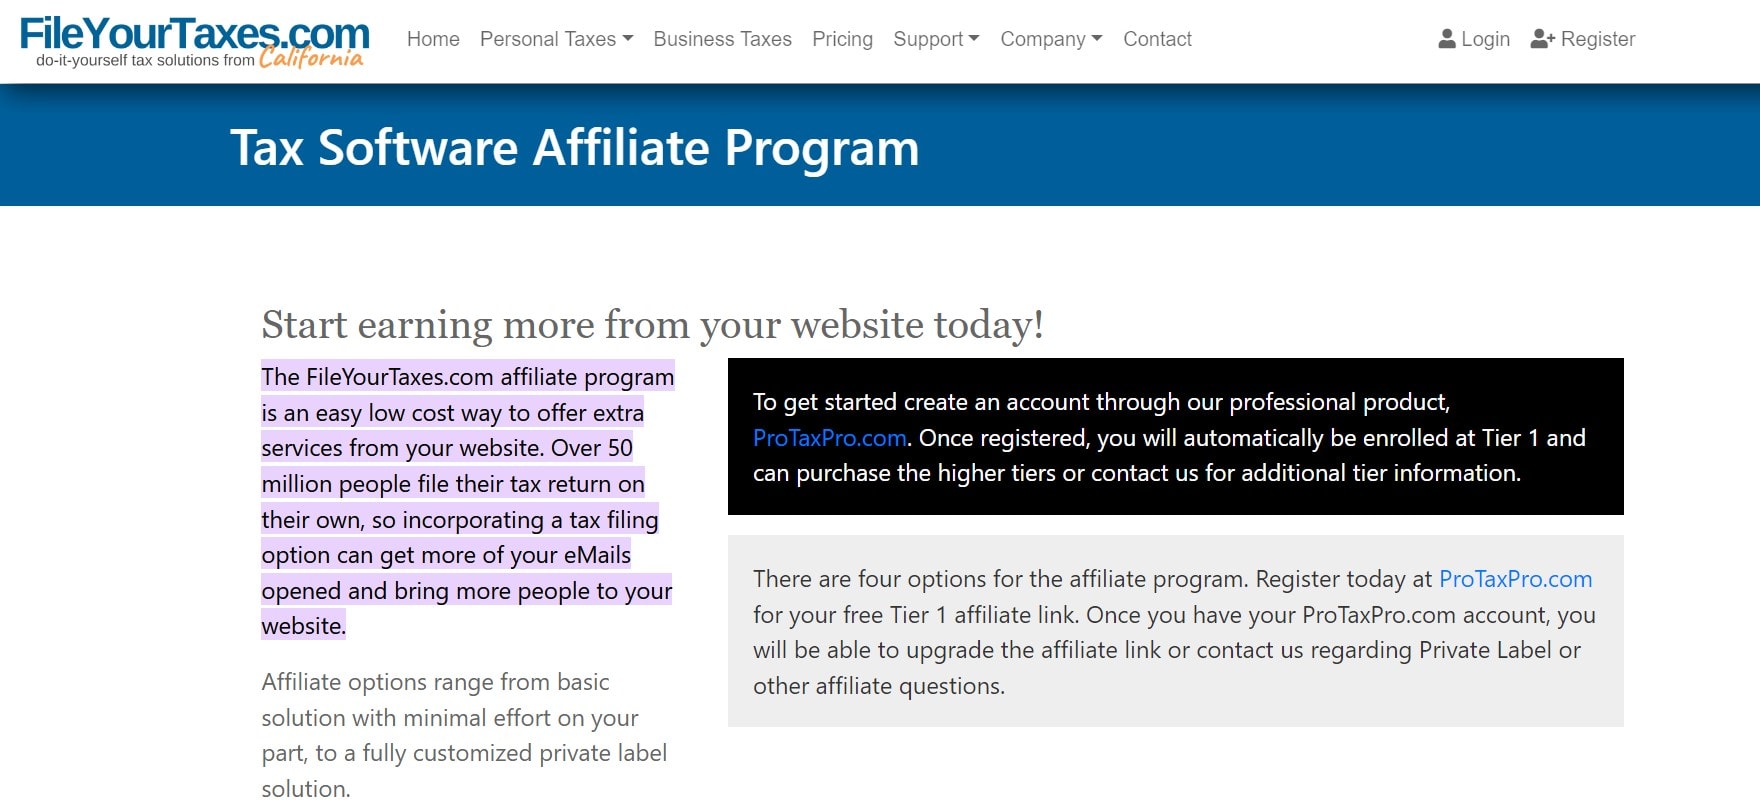 FileYourTaxes Affiliate Program: Tax Preparation Affiliate Programs